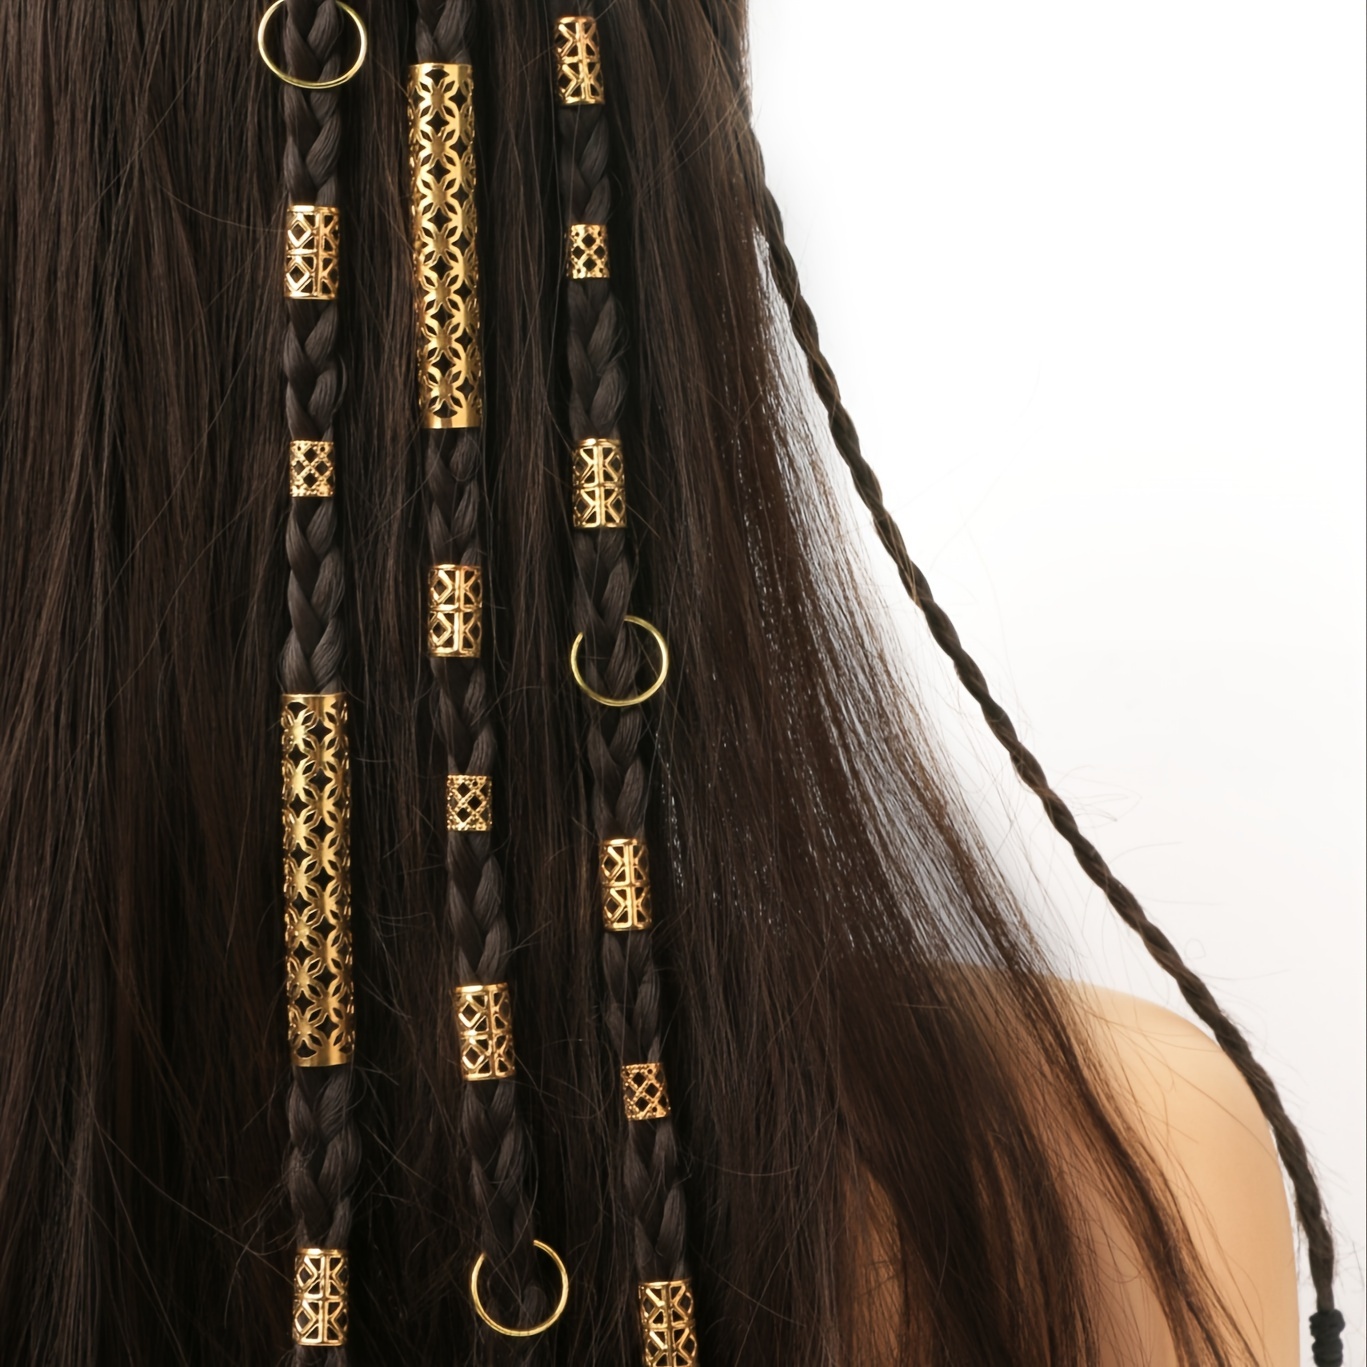 Random Color Hair Braids Maker Beads Headwear Hairpins Mini - Temu